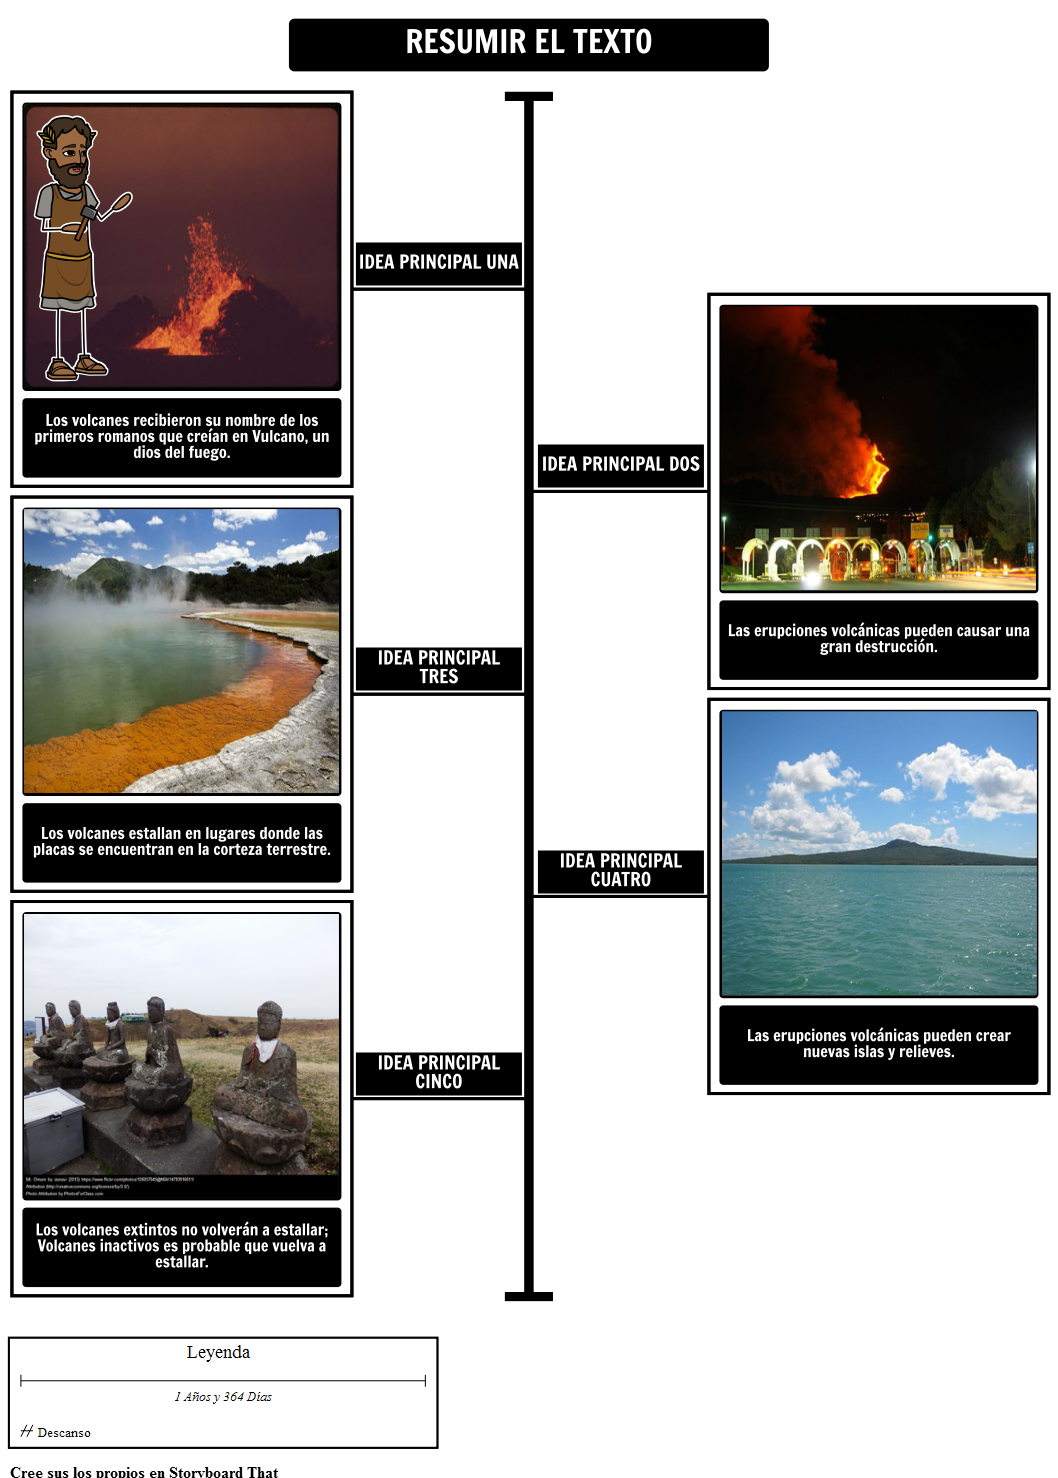 Volcanes - Resumir el Texto